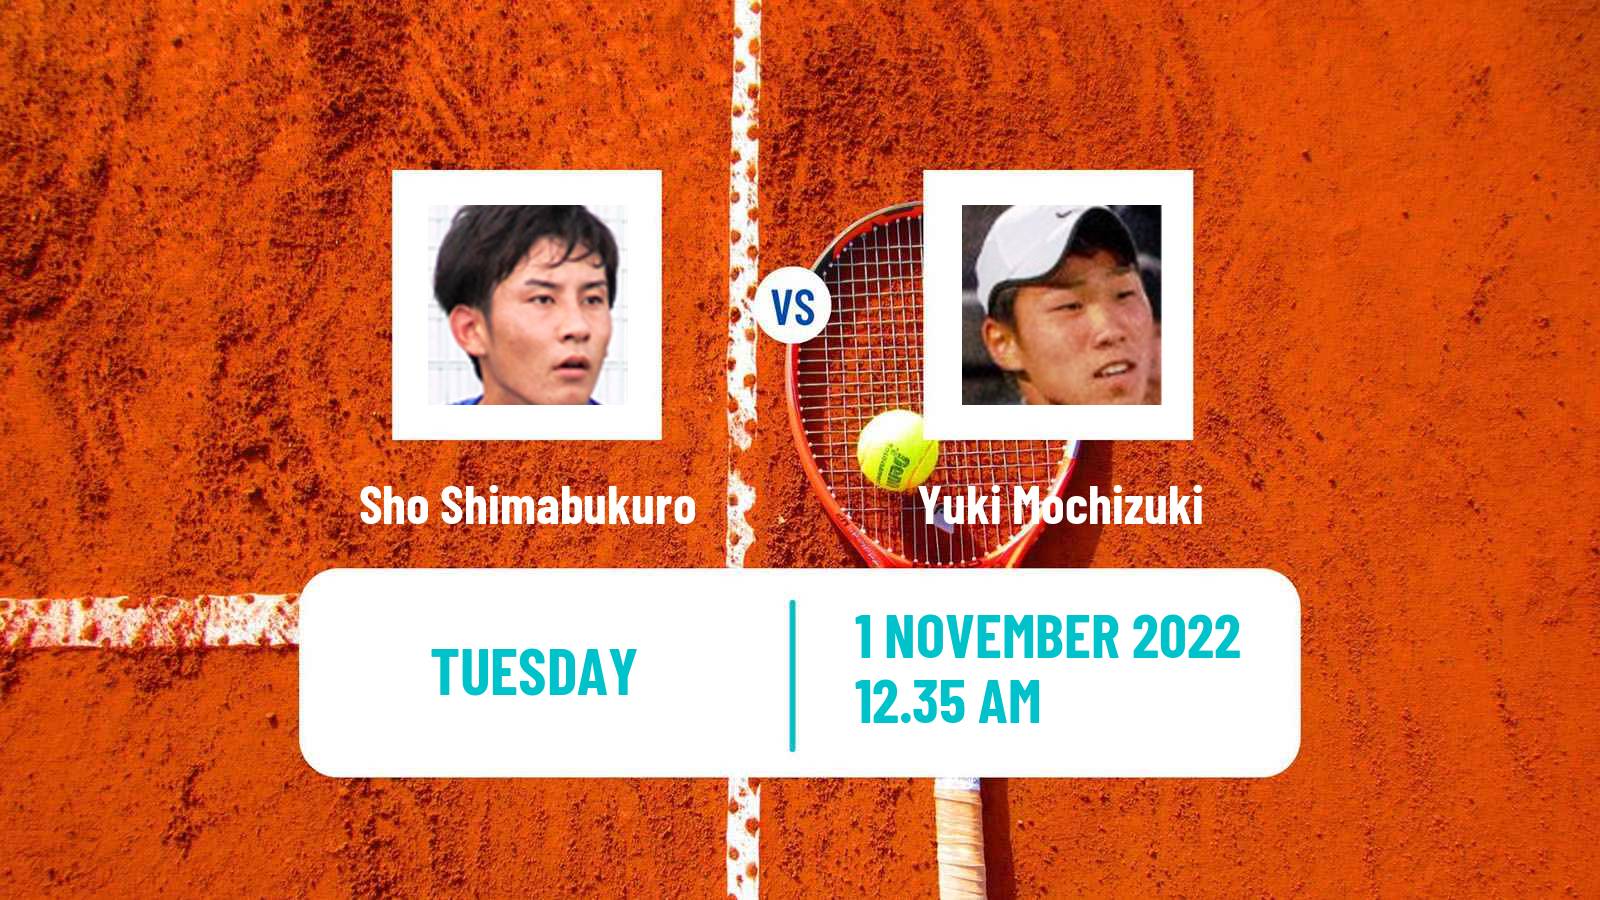 Tennis ATP Challenger Sho Shimabukuro - Yuki Mochizuki